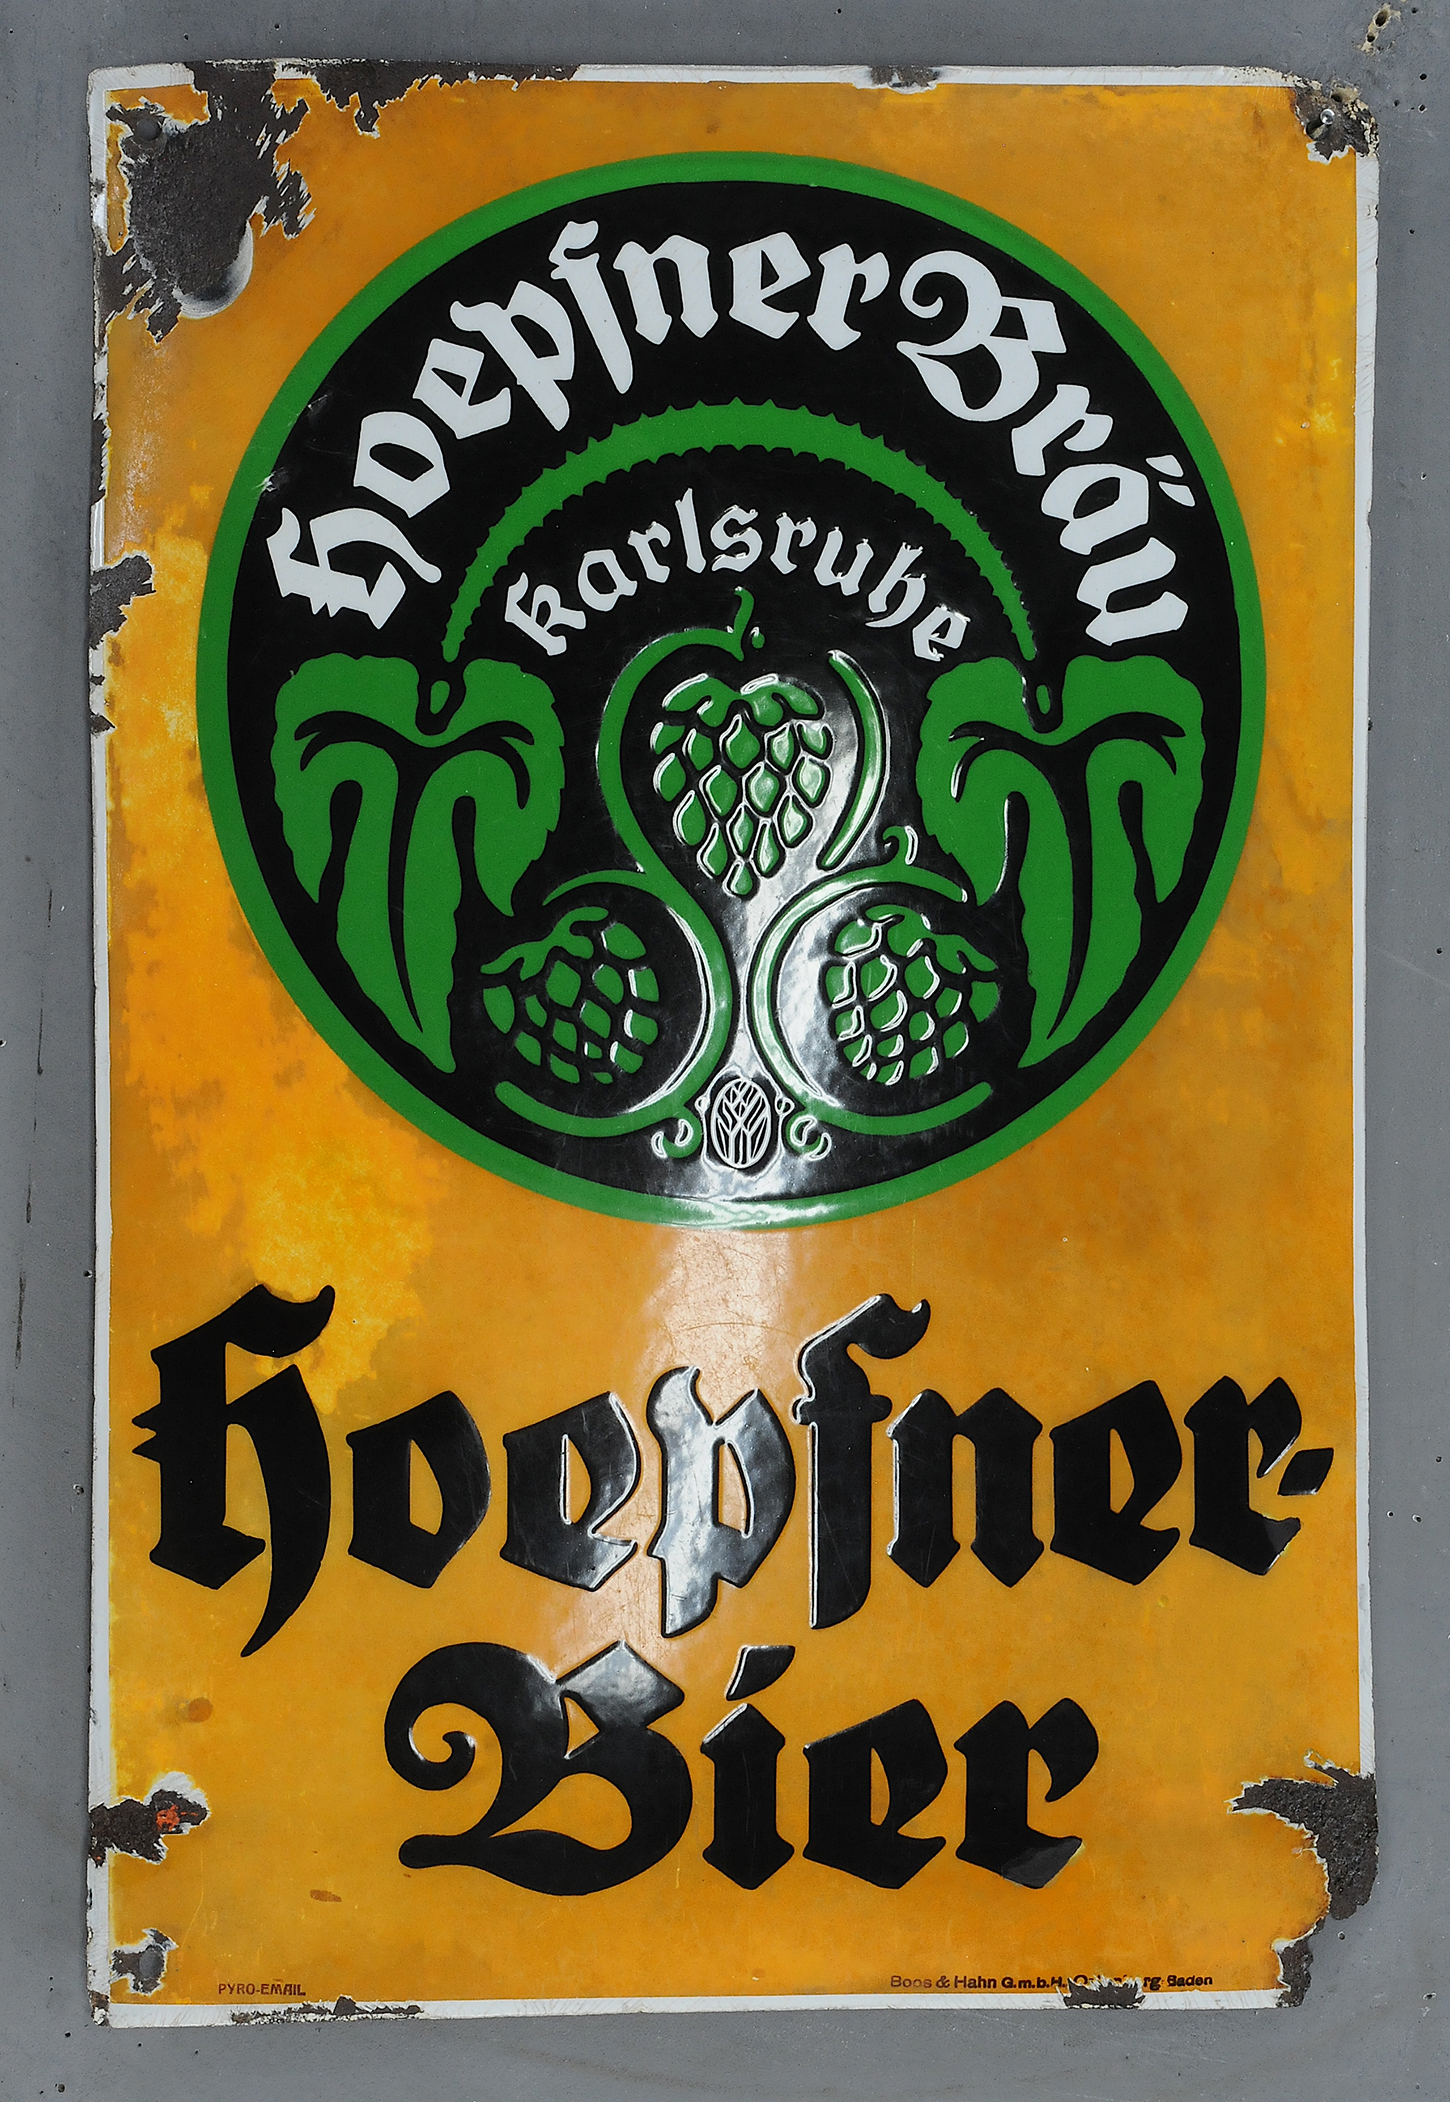 Hoepfner Bier - Image 3 of 3